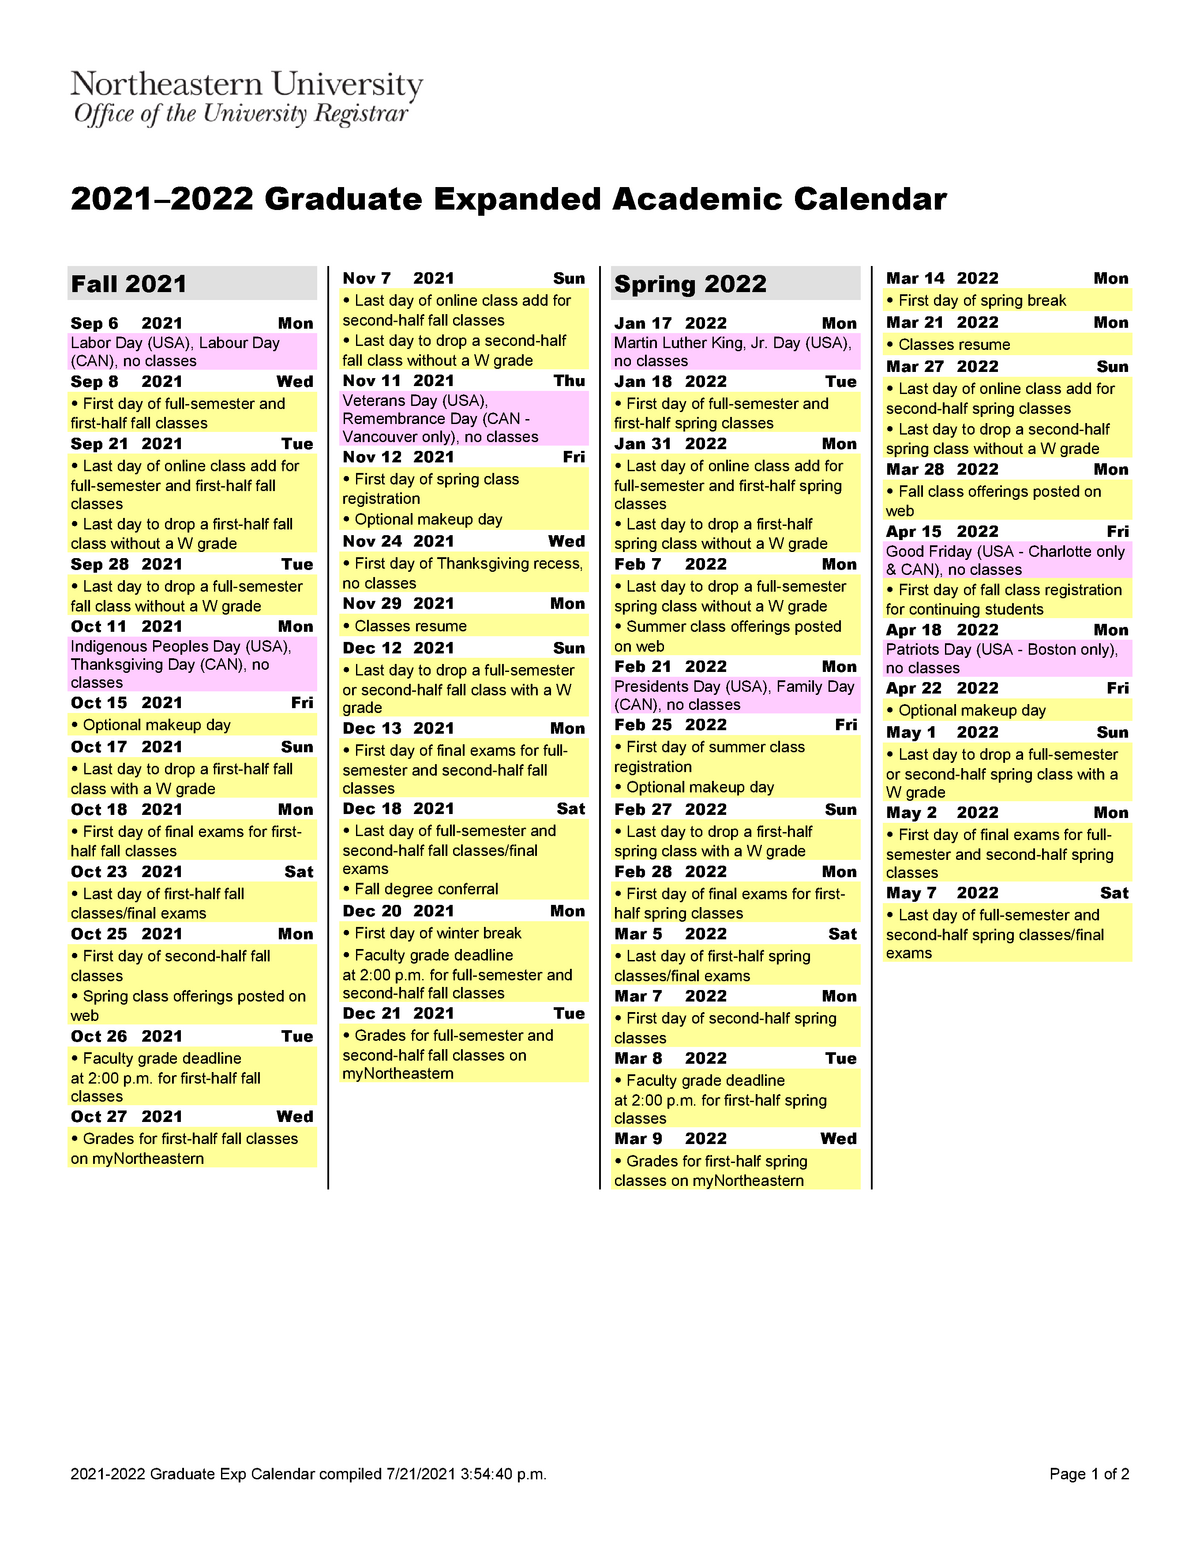 Ub Academic Calendar Fall 2022 2021 2022 Gr Expanded Calendar List 3 - Info 6215 - Business Analysis -  Studocu